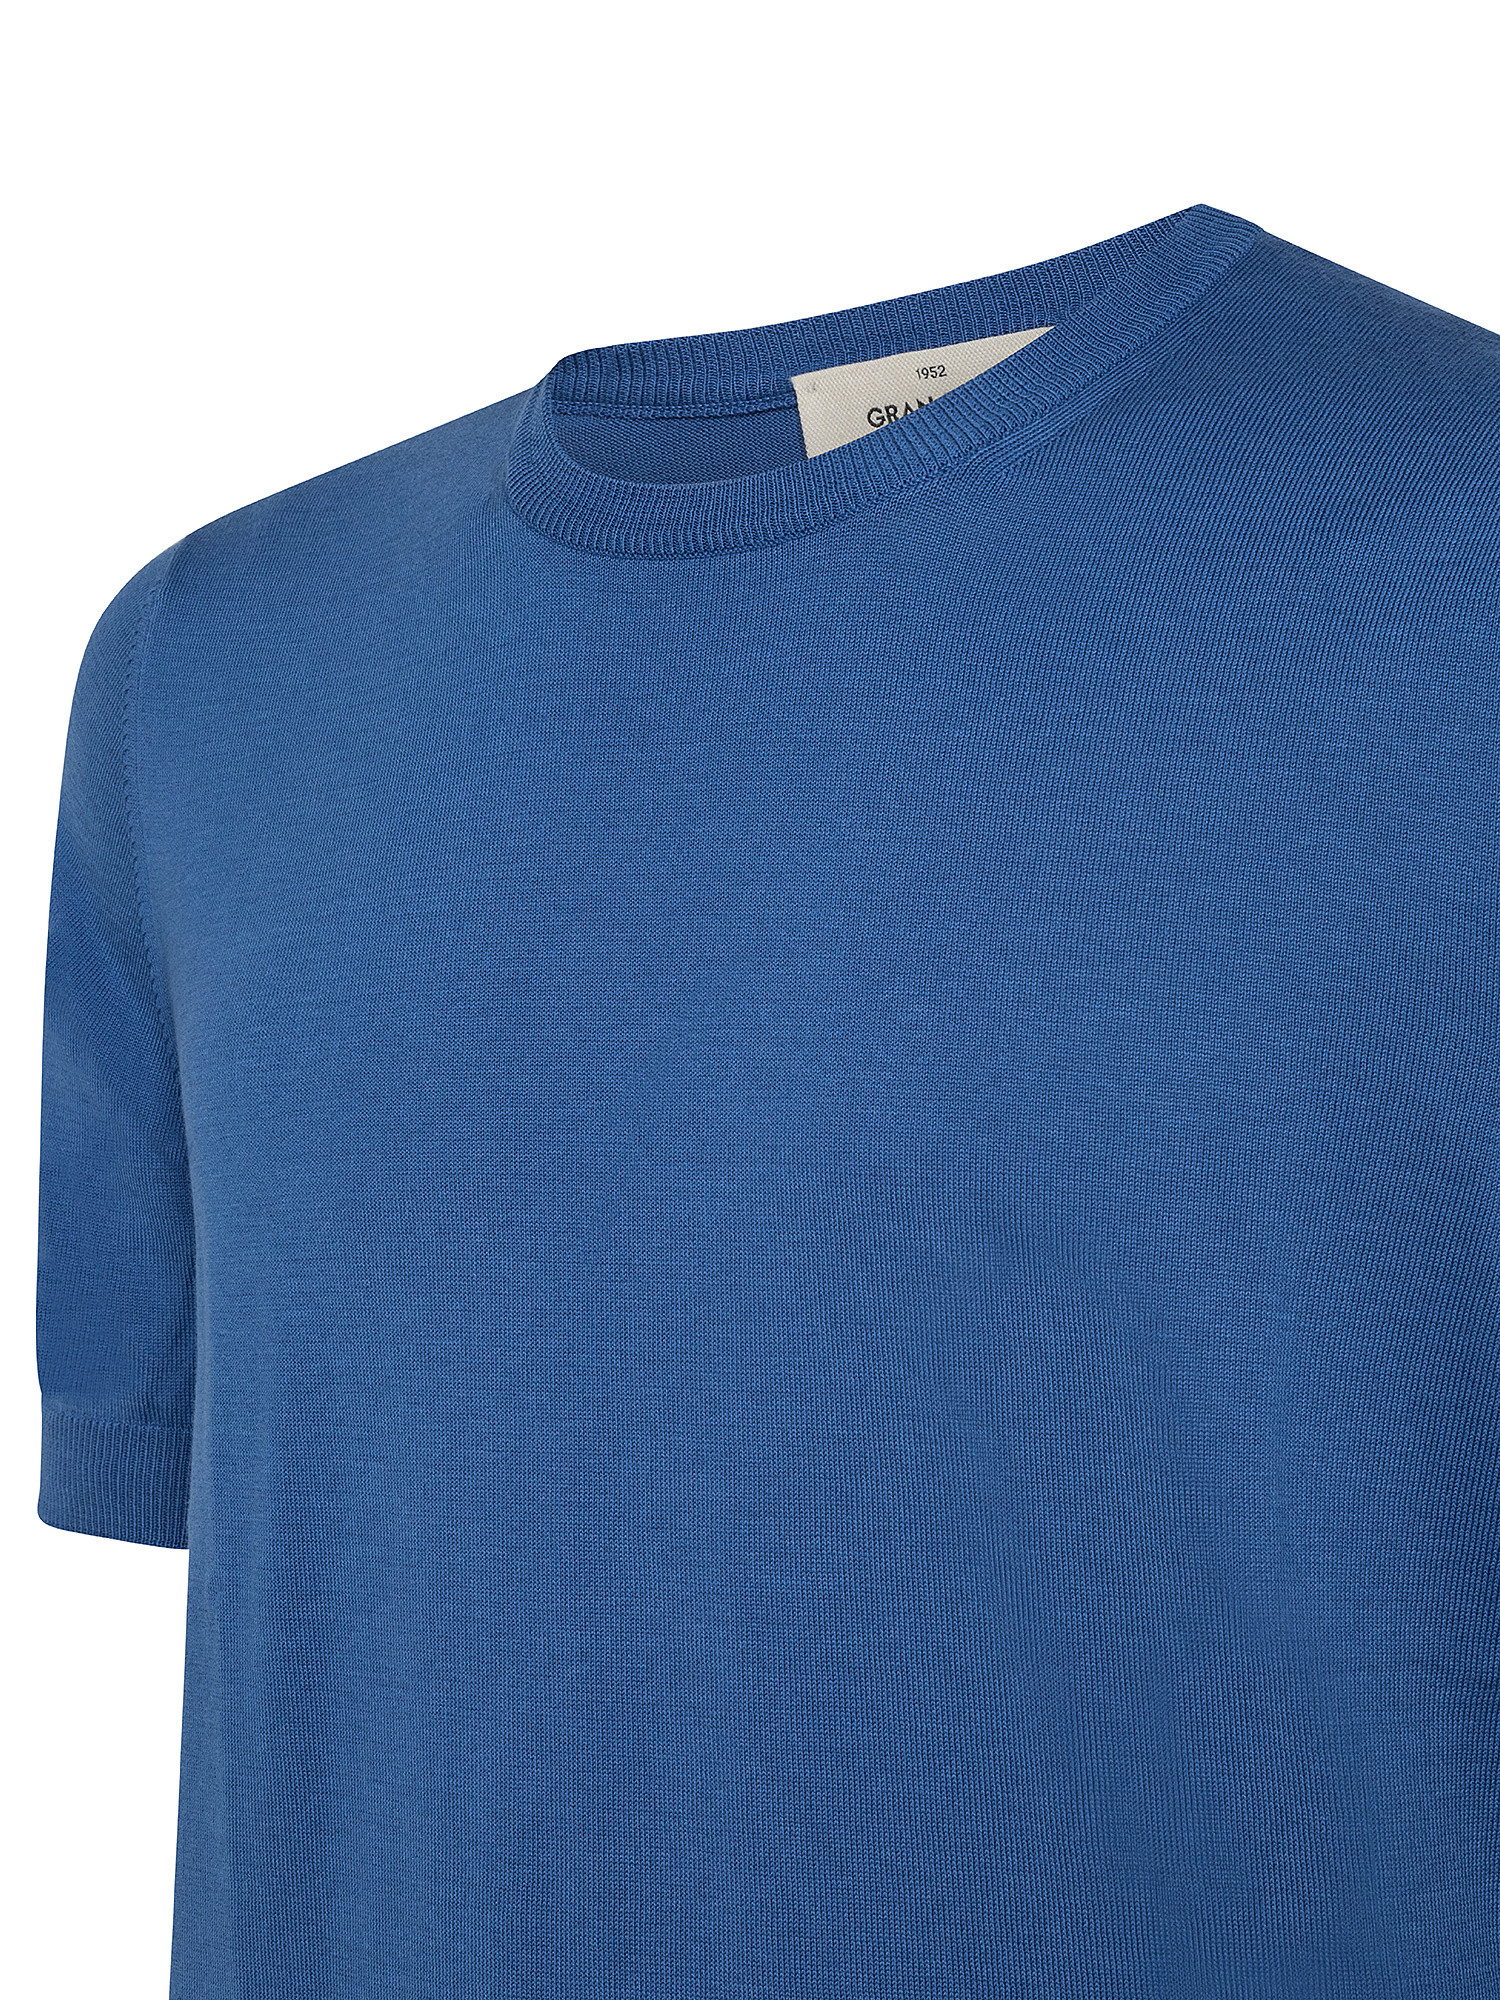 T-shirt in maglia a maniche corte in sottile cotone organico biologico effetto Vintage, Blu chiaro, large